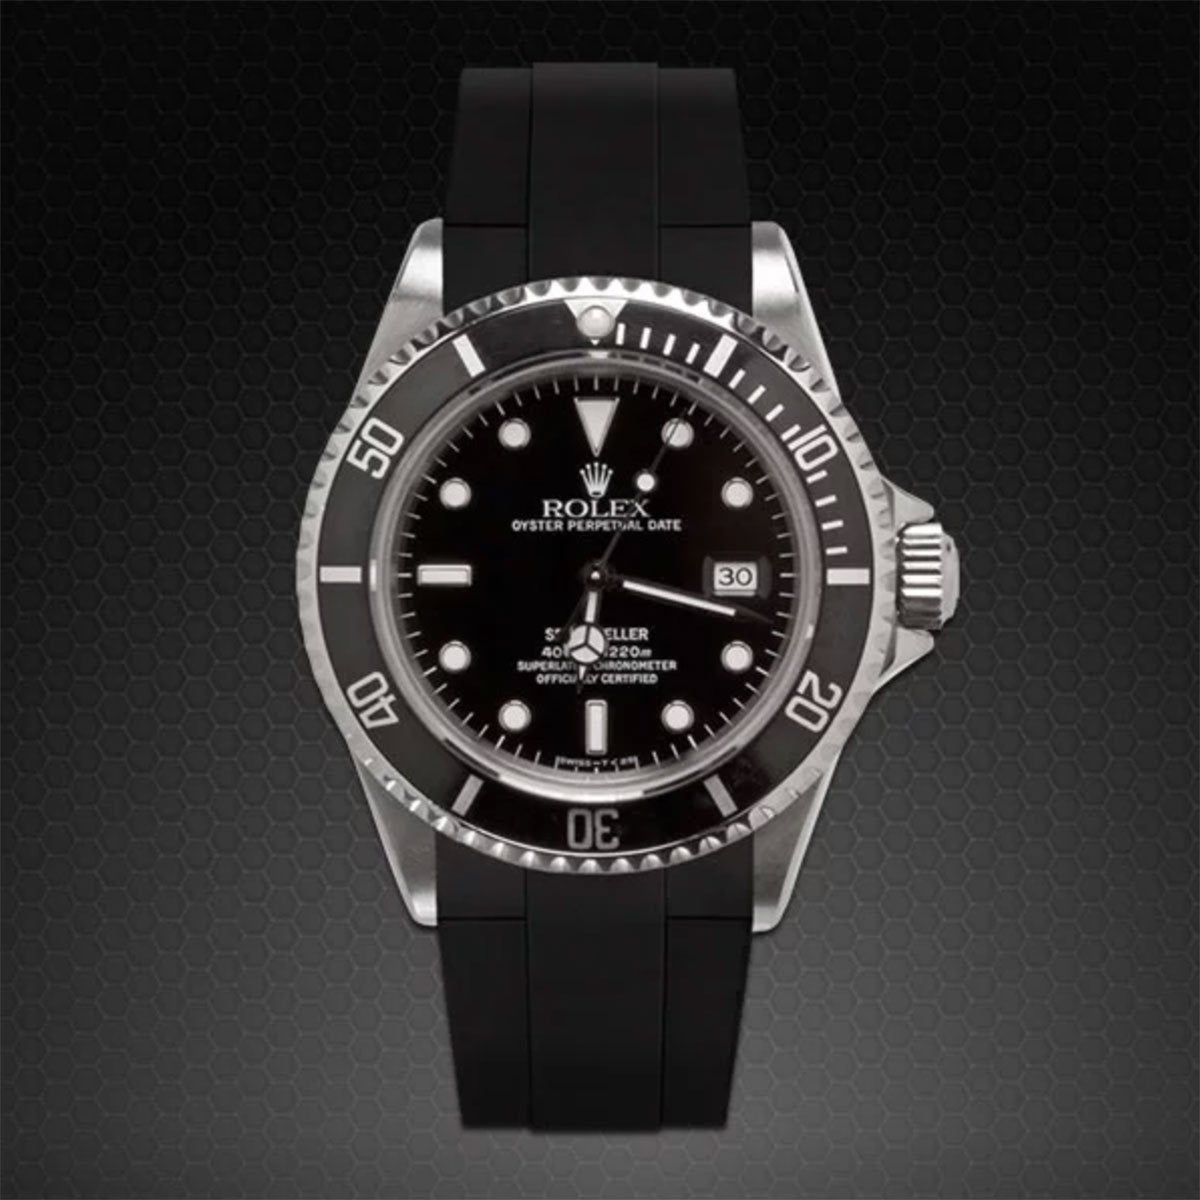 Rolex - Rubber B - Bracelet caoutchouc pour Sea-Dweller Non-Ceramic - Série classique - watch band leather strap - ABP Concept -